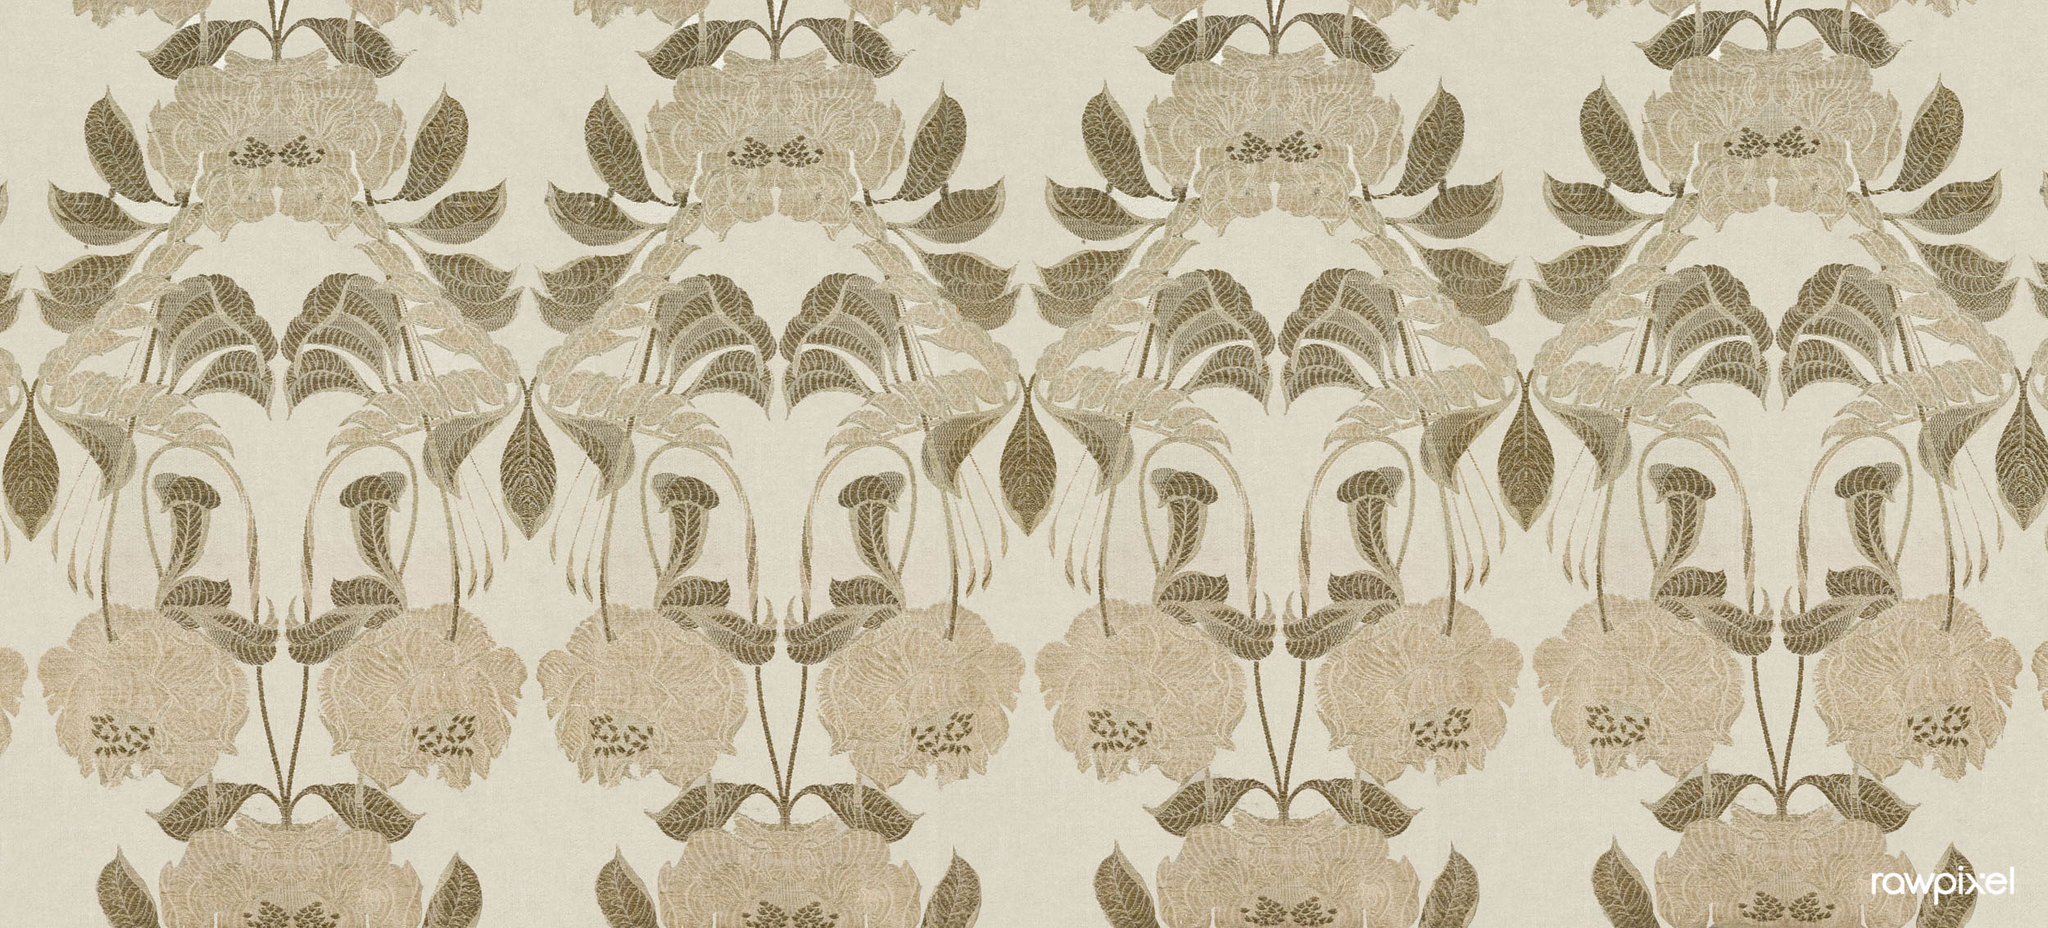 Silk with Art Nouveau Design (1900) textile